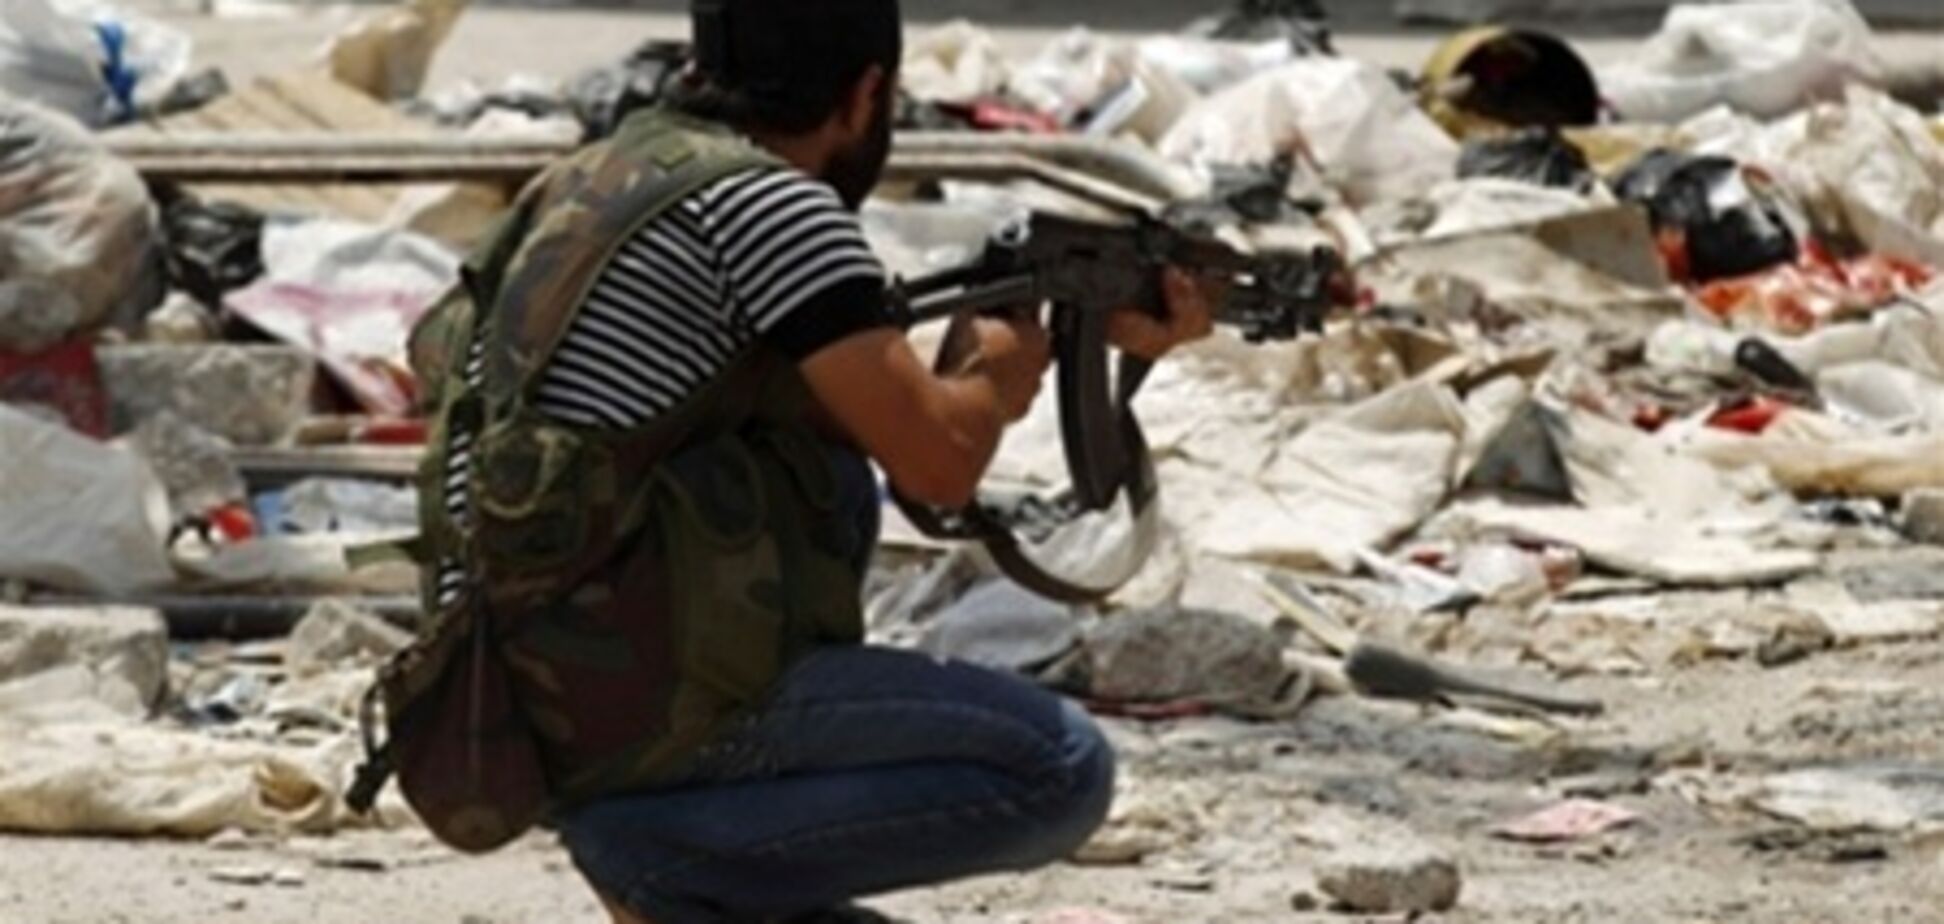 ЄС продовжить ембарго на поставки зброї до Сирії - ЗМІ